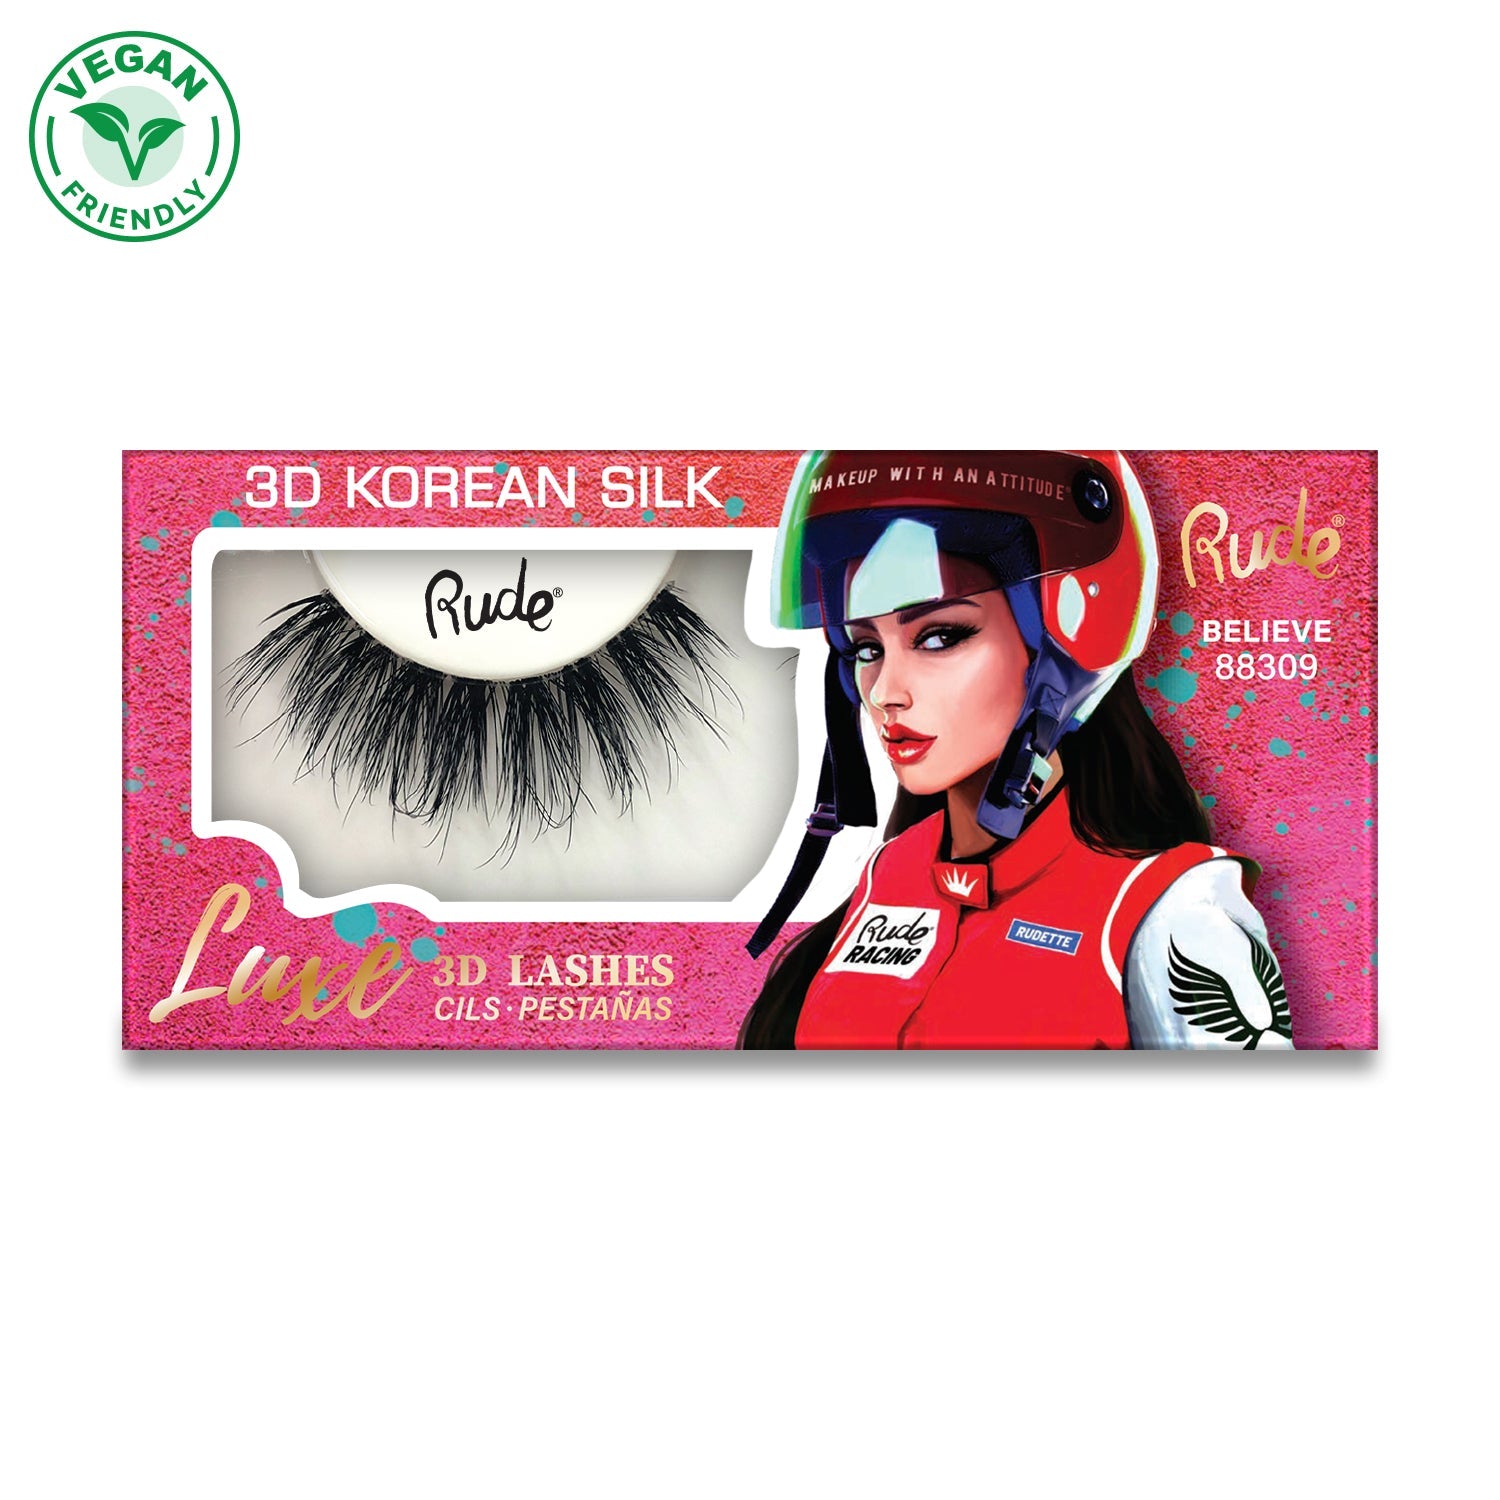 RUDE Luxe 3D Korean Silk Lashes